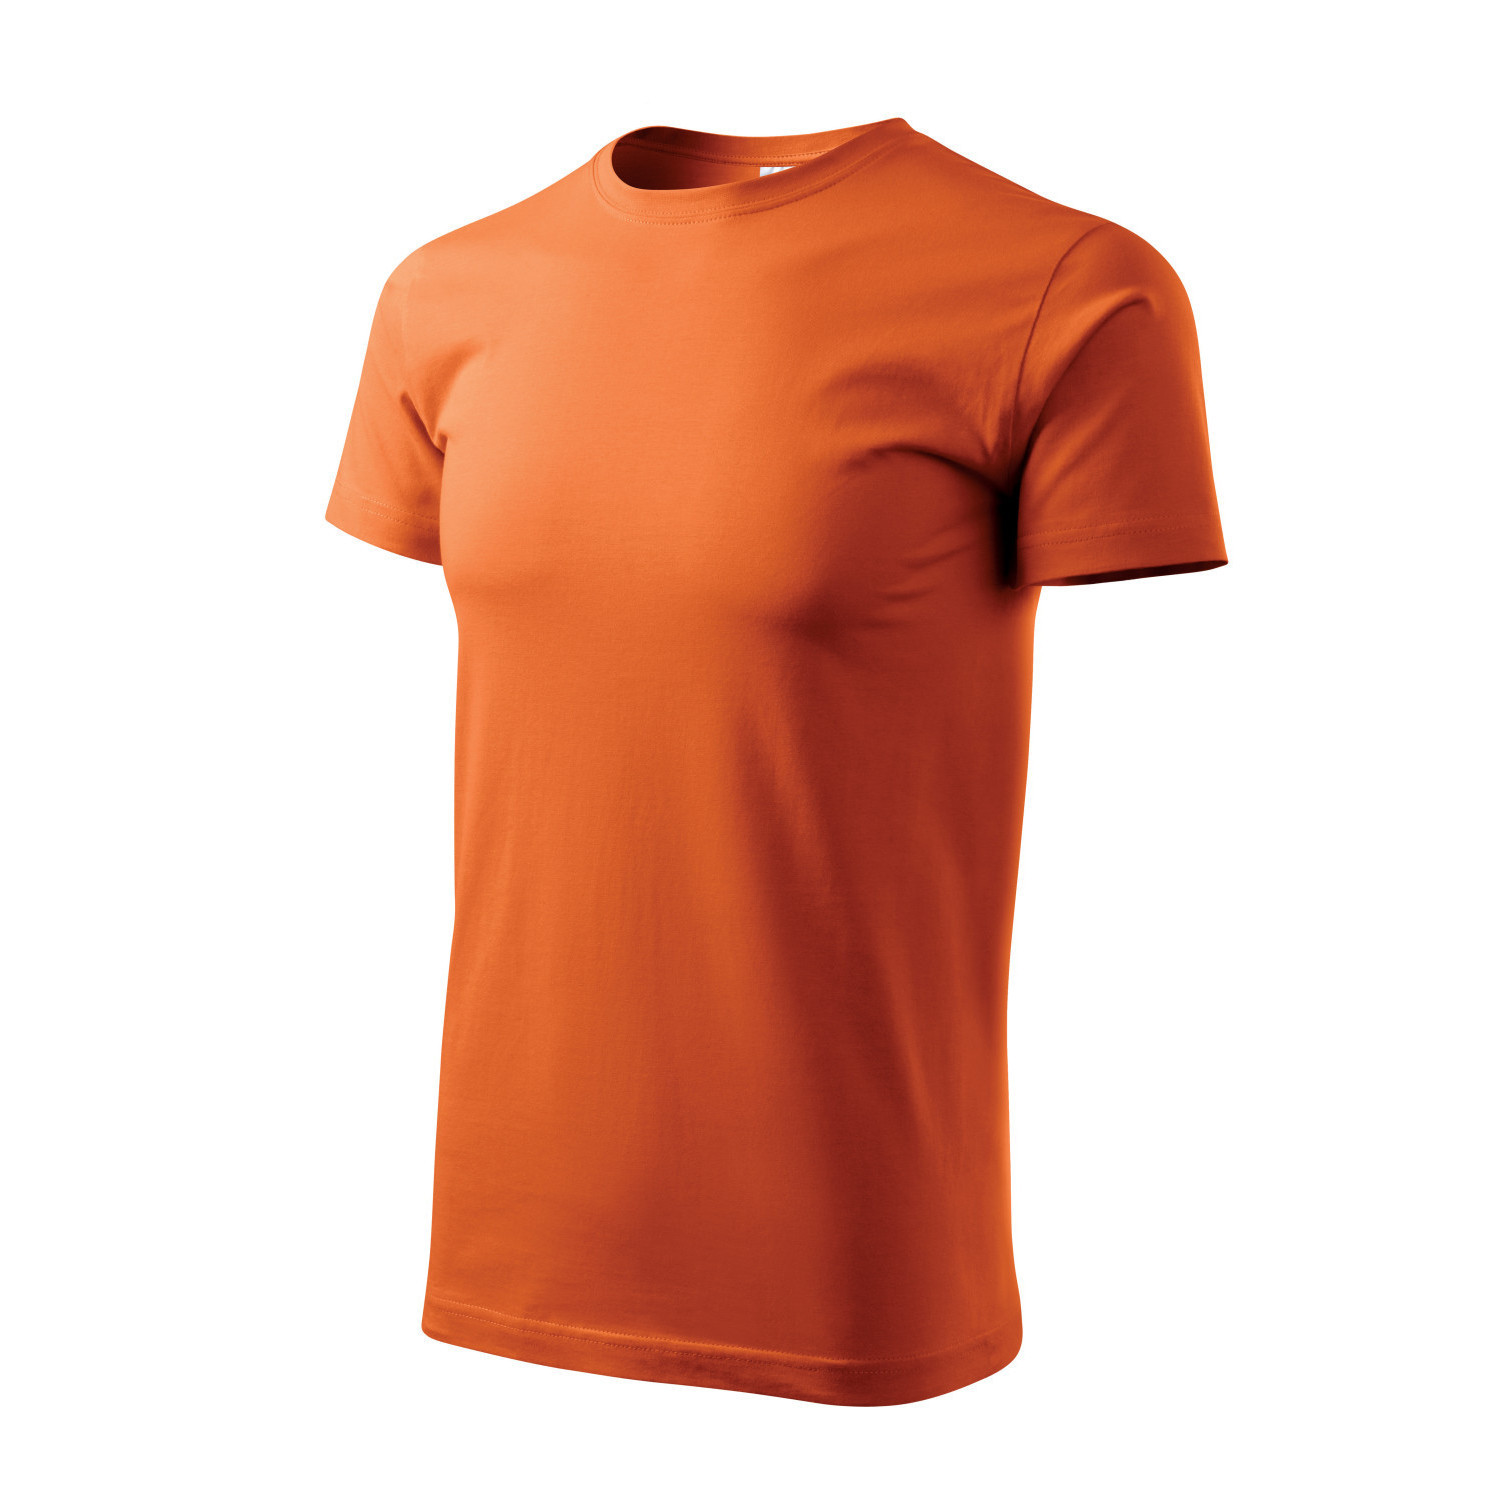 Мъжка тениска лукс, оранжева